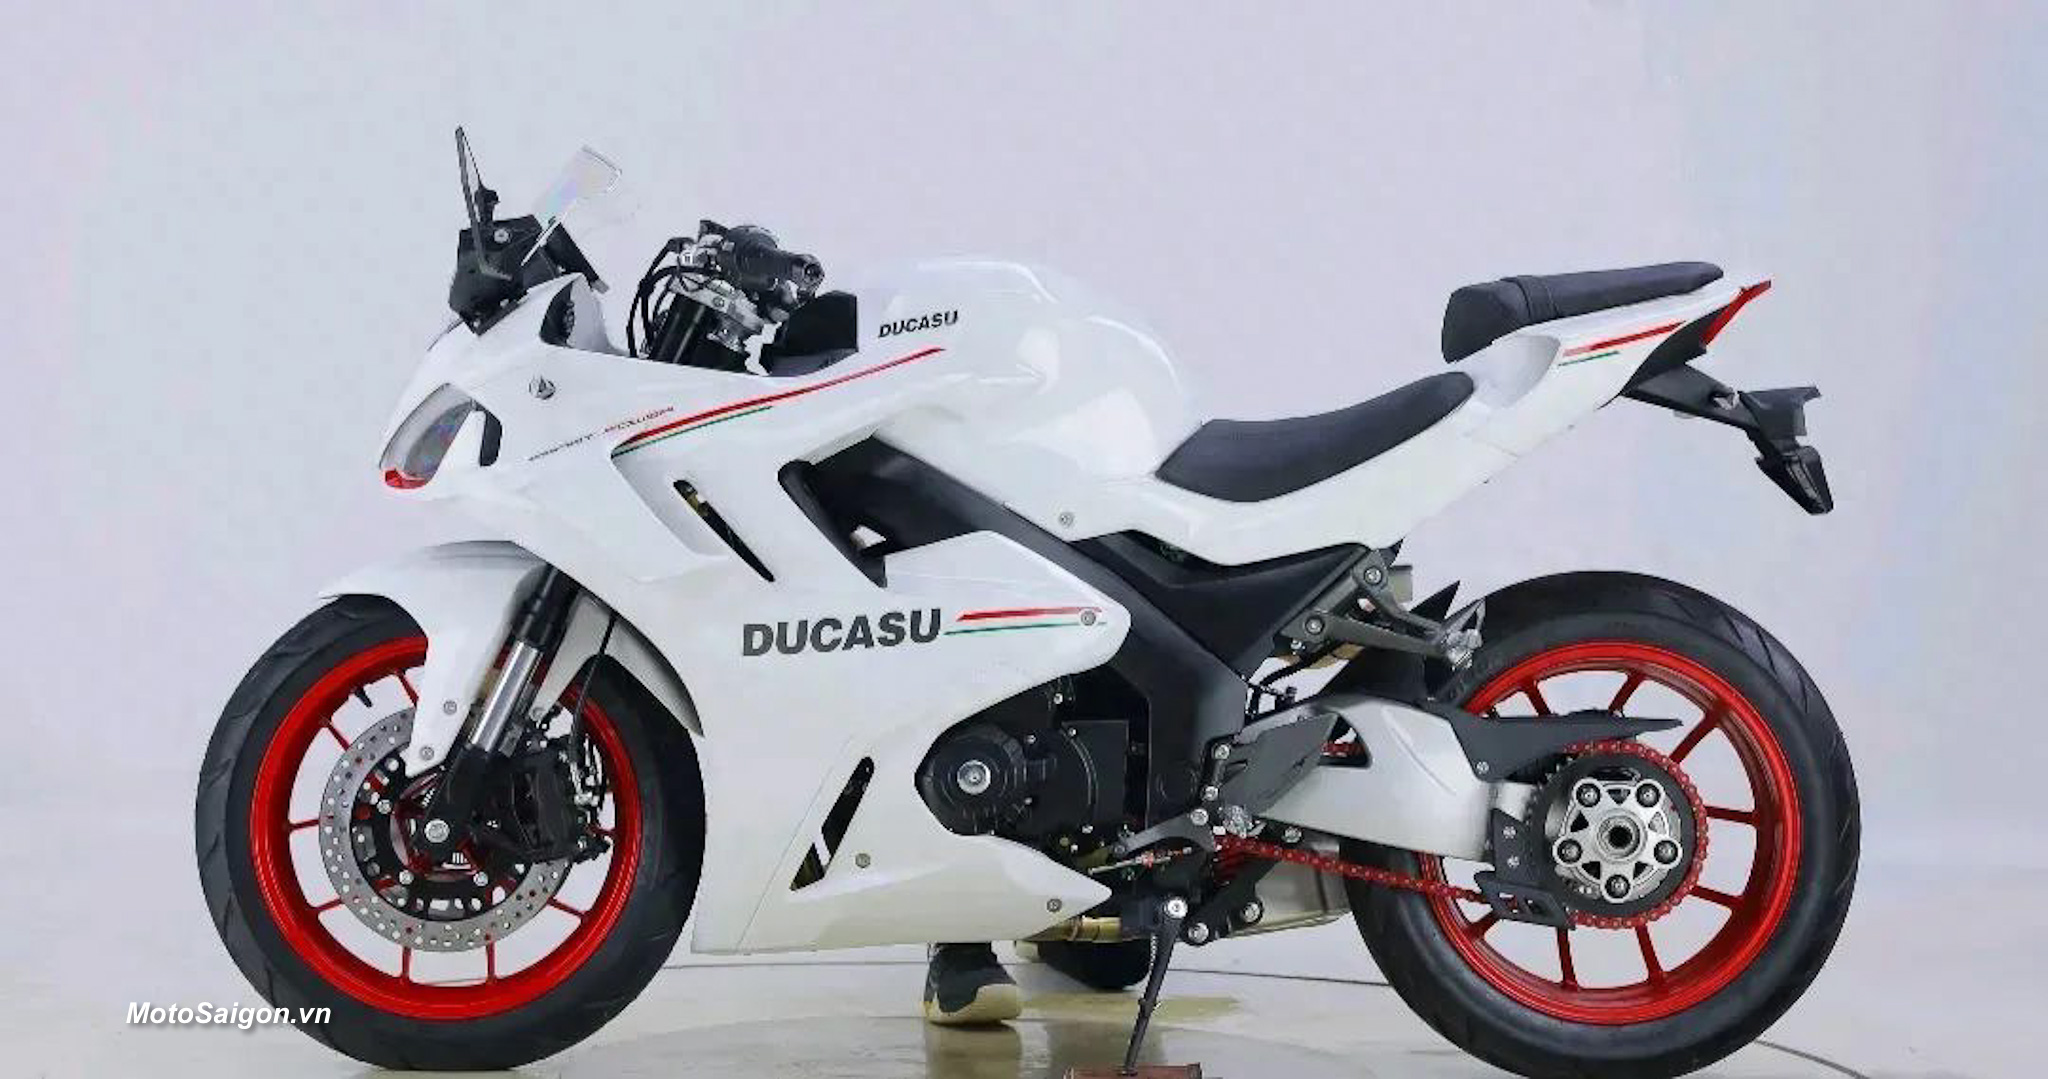 Ducasu DK400 nhái Ducati Supersport 950